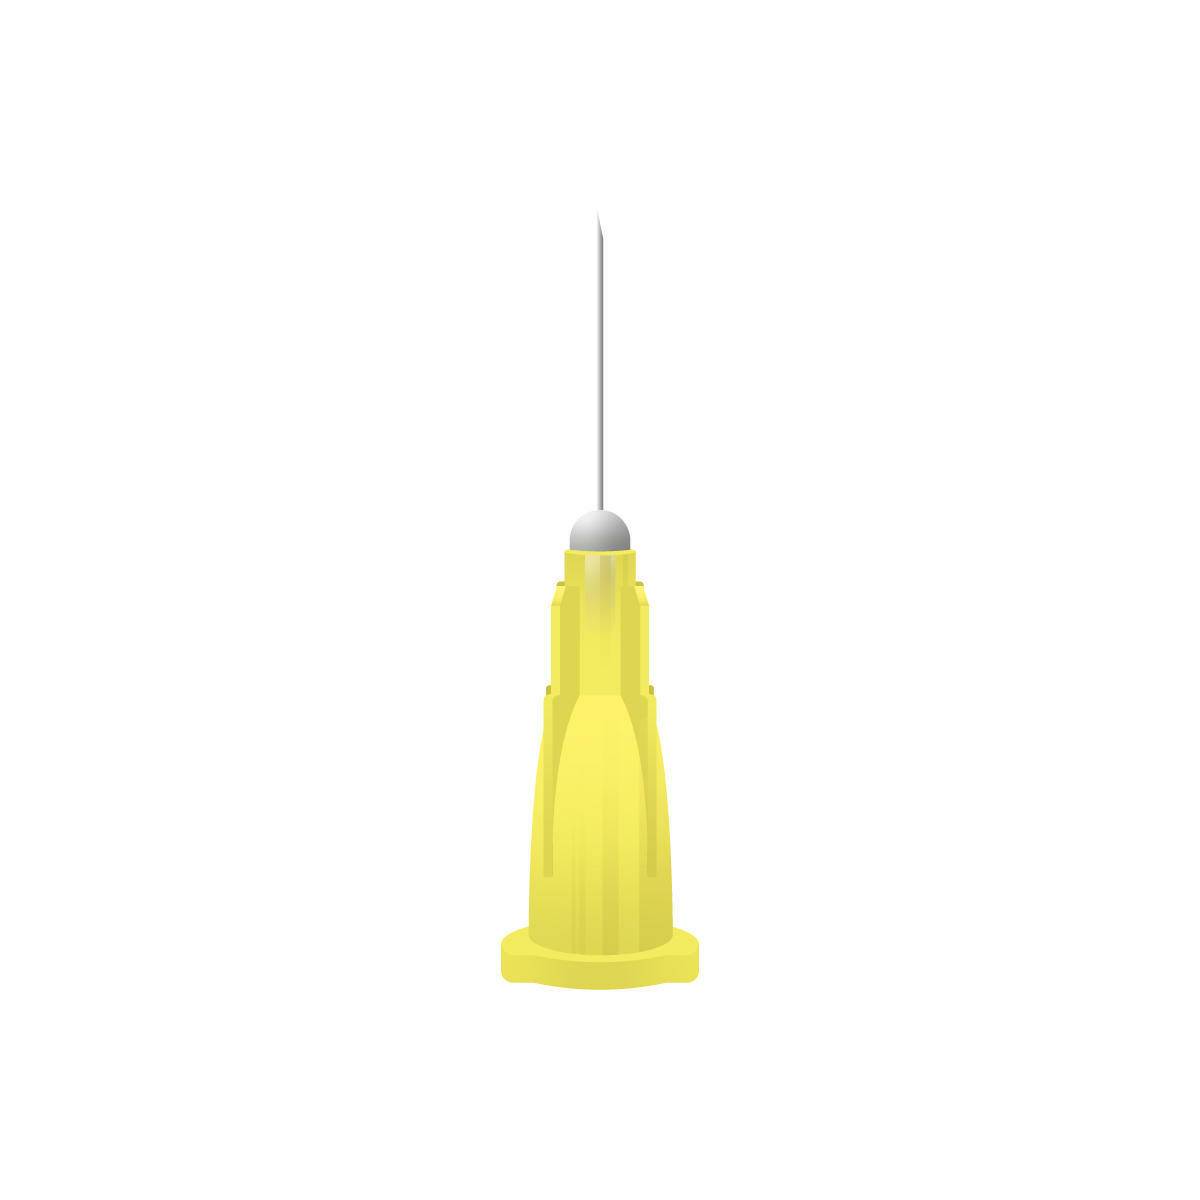 30g Yellow 0.5 inch Terumo Needles - UKMEDI